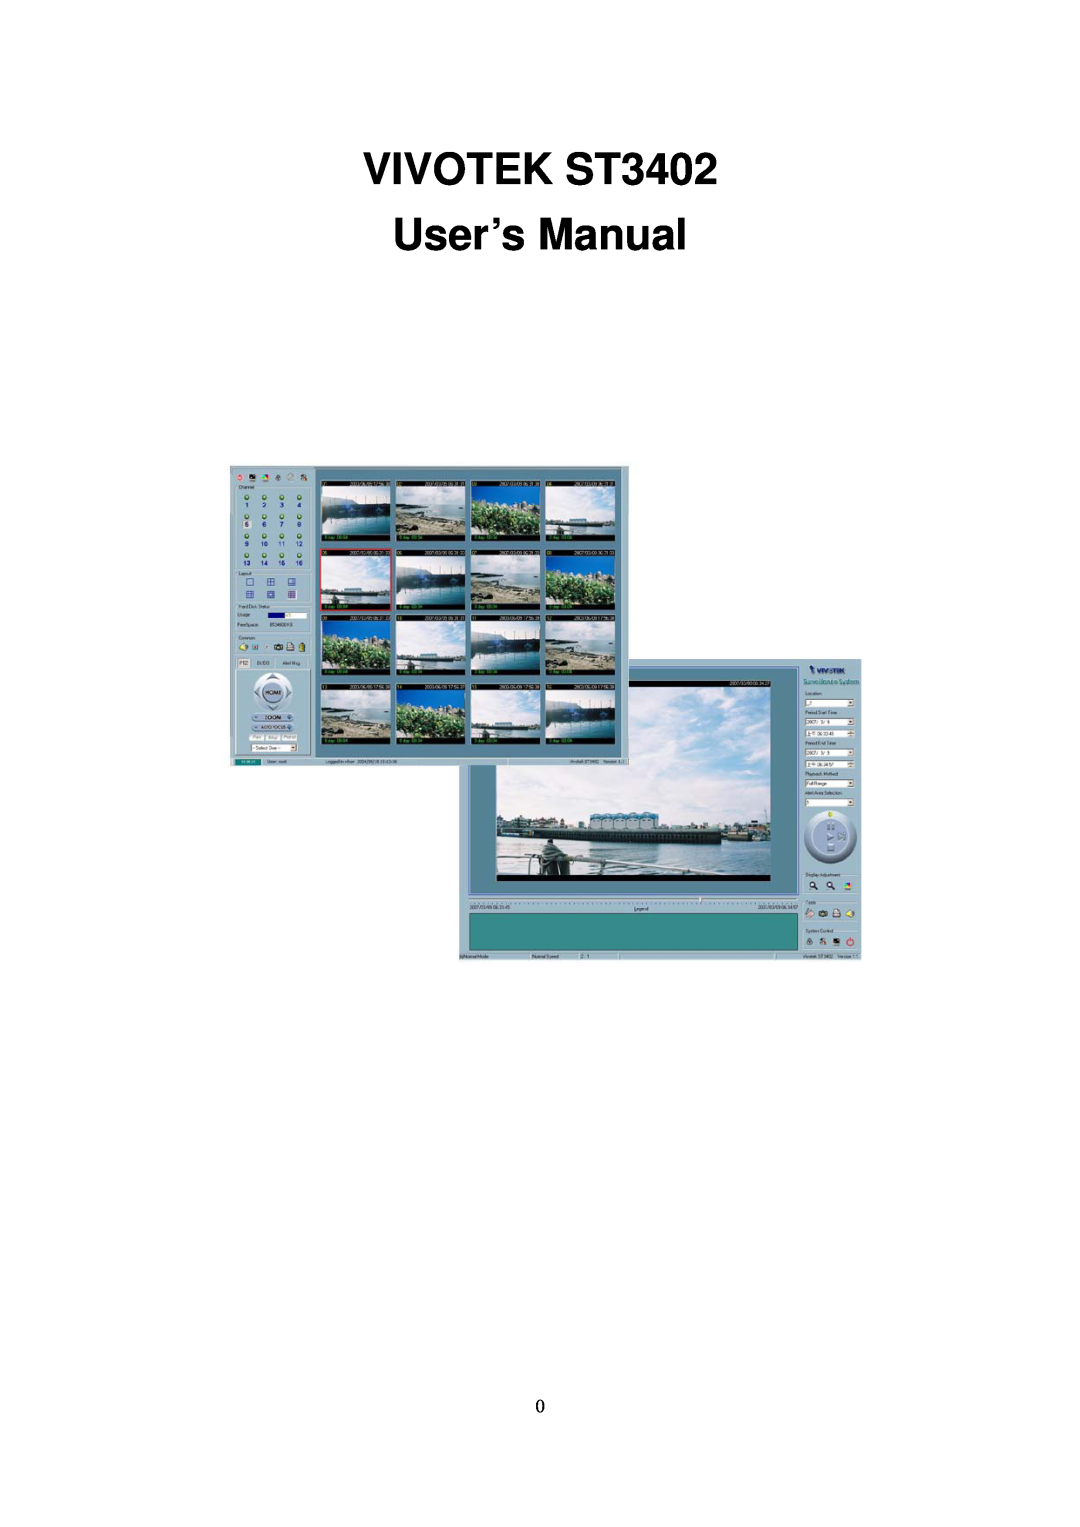 Vivotek user manual VIVOTEK ST3402 User’s Manual 